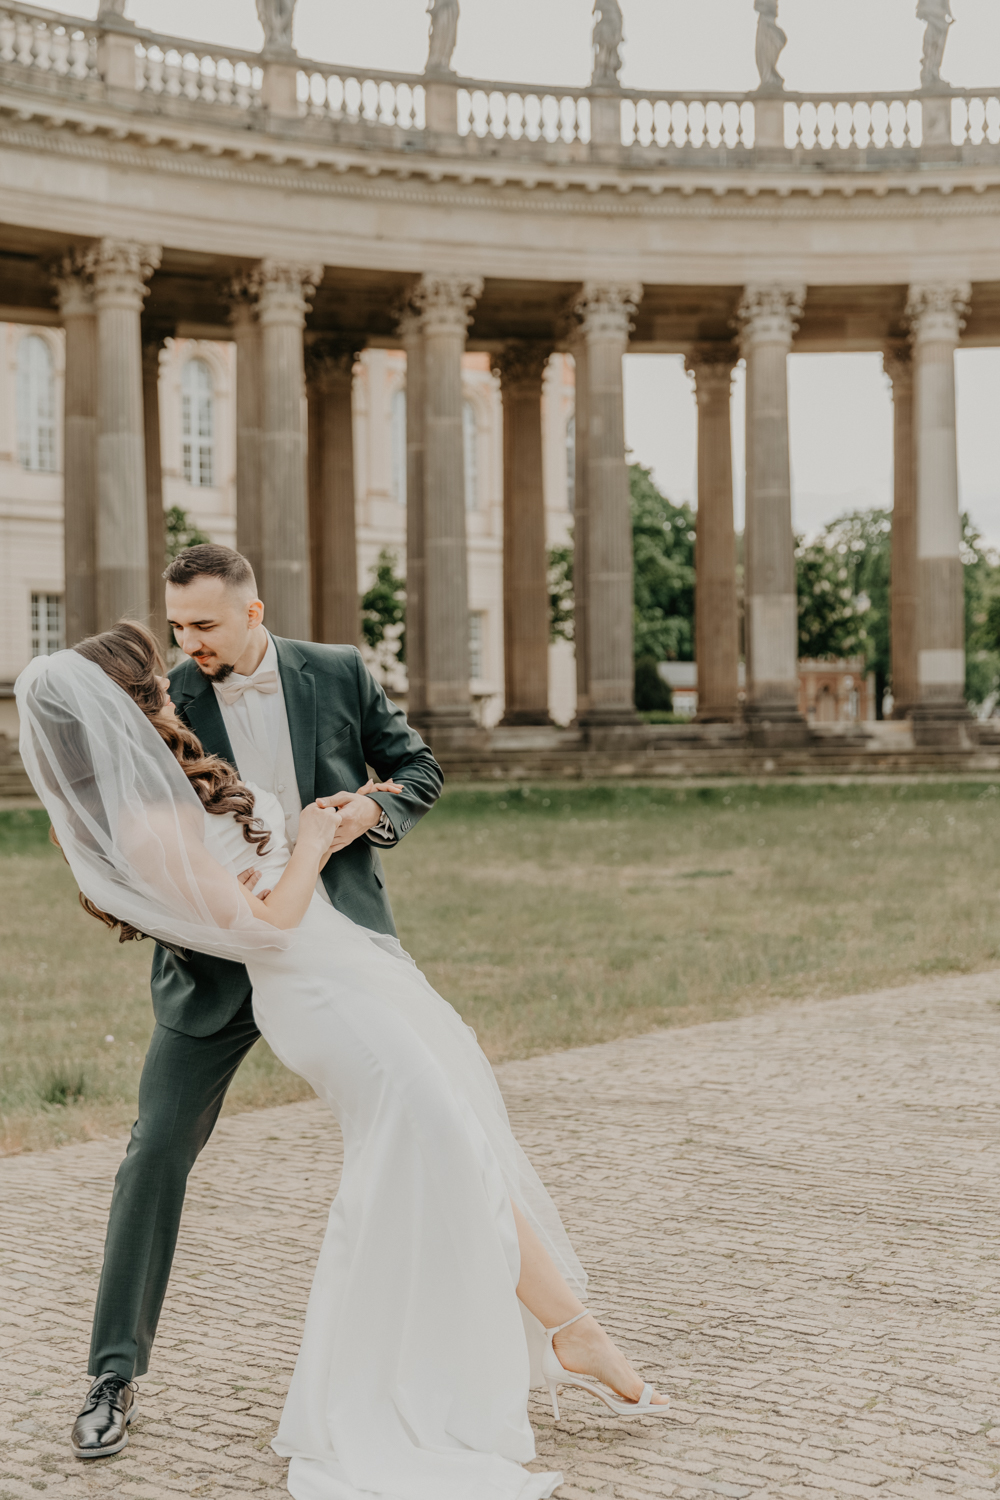 Das Brautpaar tanzt vor einem großen Bogen am Neuen Palais in Potsdam. Der Bräutigam hält seine Frau Fest. Das ganze gehört zu einer ganztätigen Hochzeitsreportage.